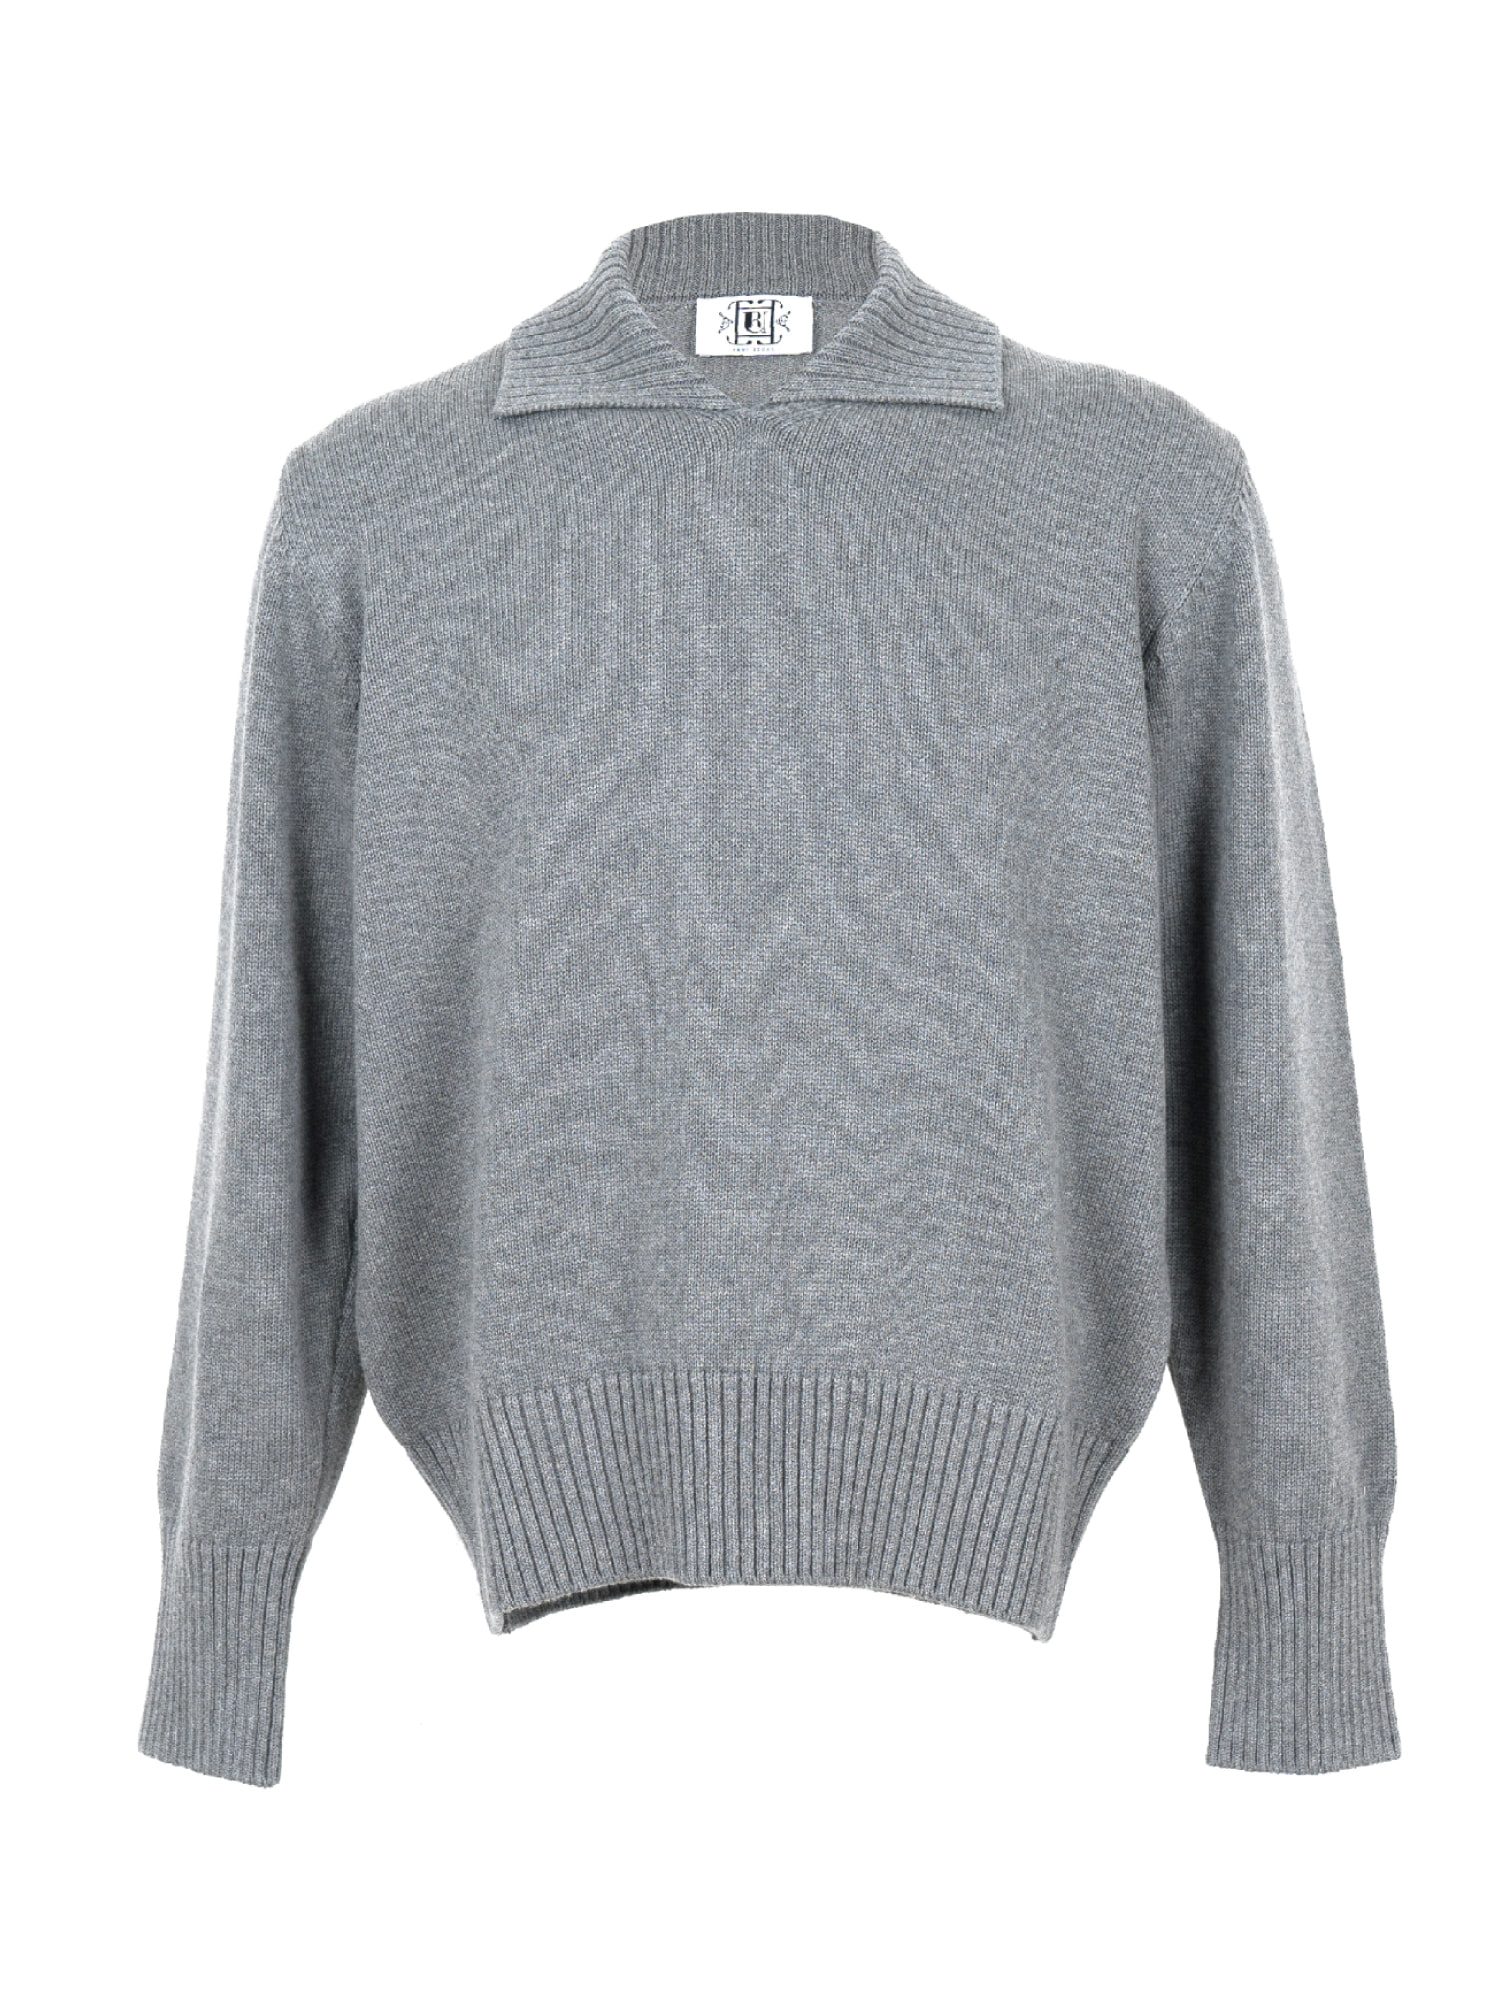 Non Button Collar Knitwear - Gray